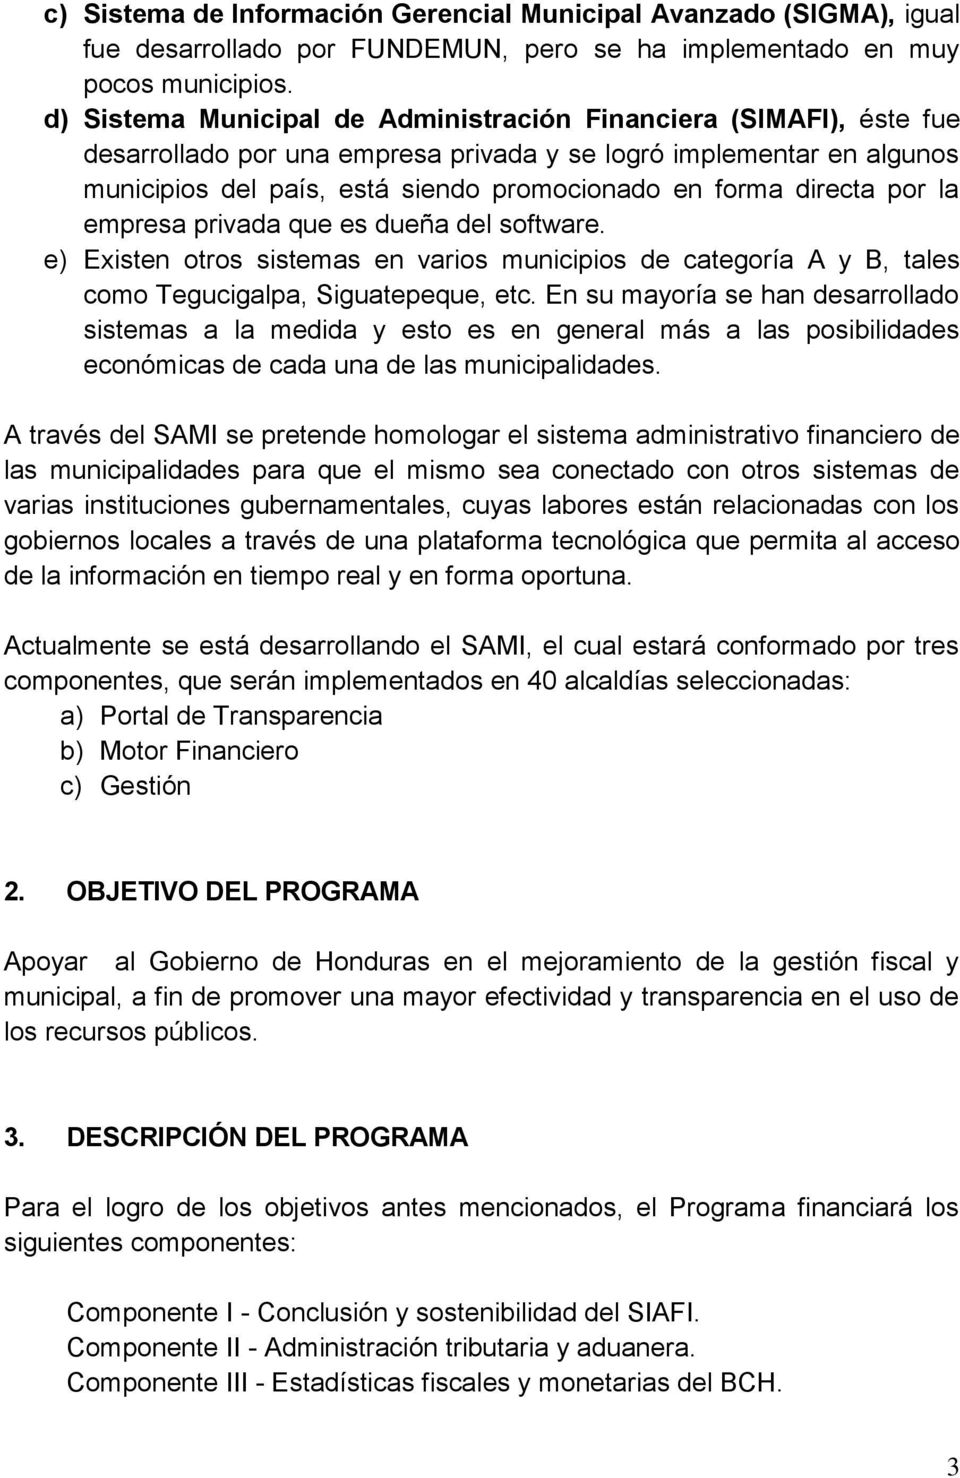 directa por la empresa privada que es dueña del software. e) Existen otros sistemas en varios municipios de categoría A y B, tales como Tegucigalpa, Siguatepeque, etc.